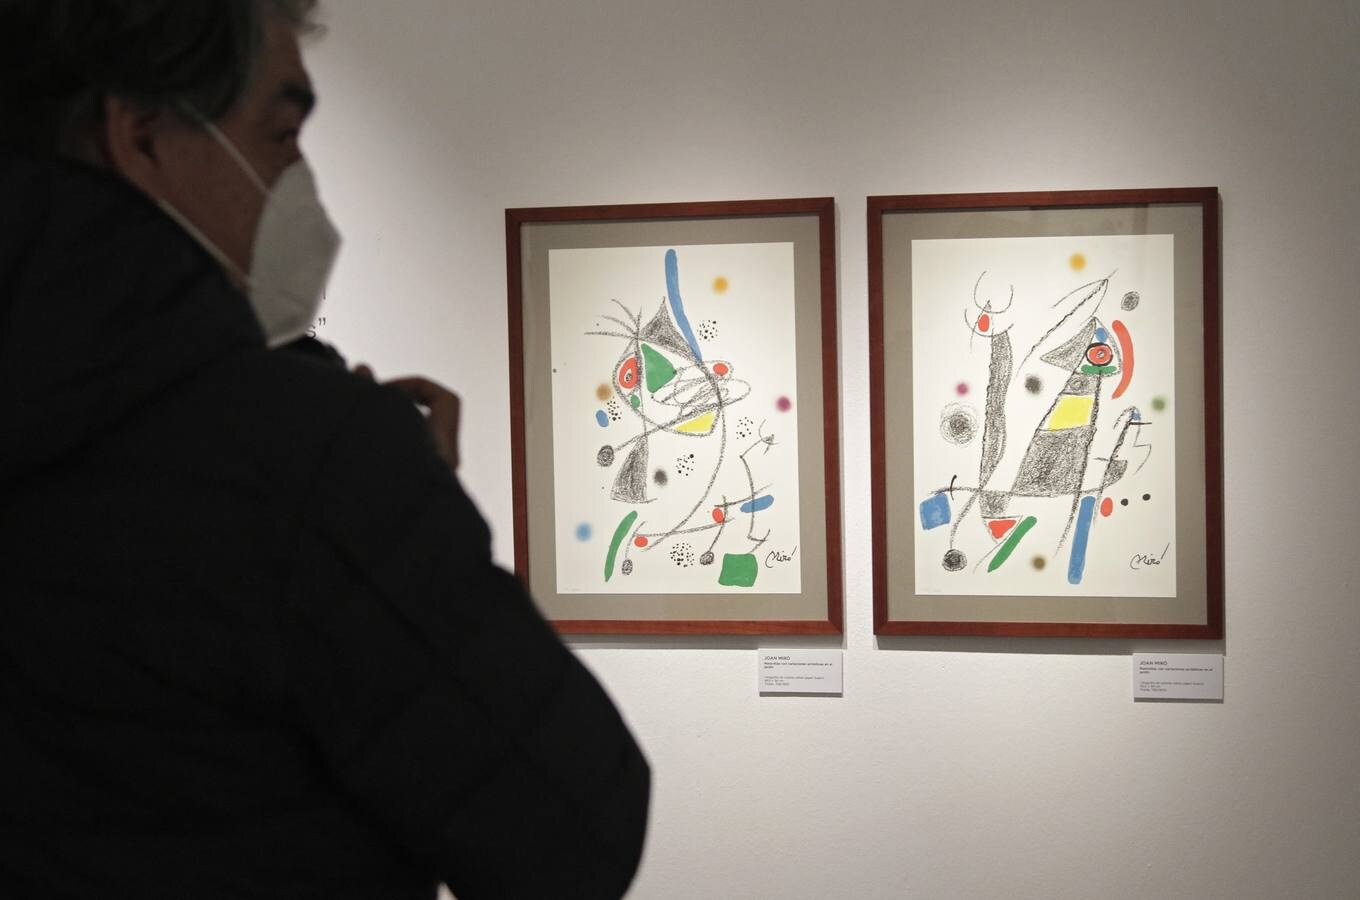 Los lazos de lo literario y lo pictórico en Picasso, Miró y Dalí, ahora en Cajasol